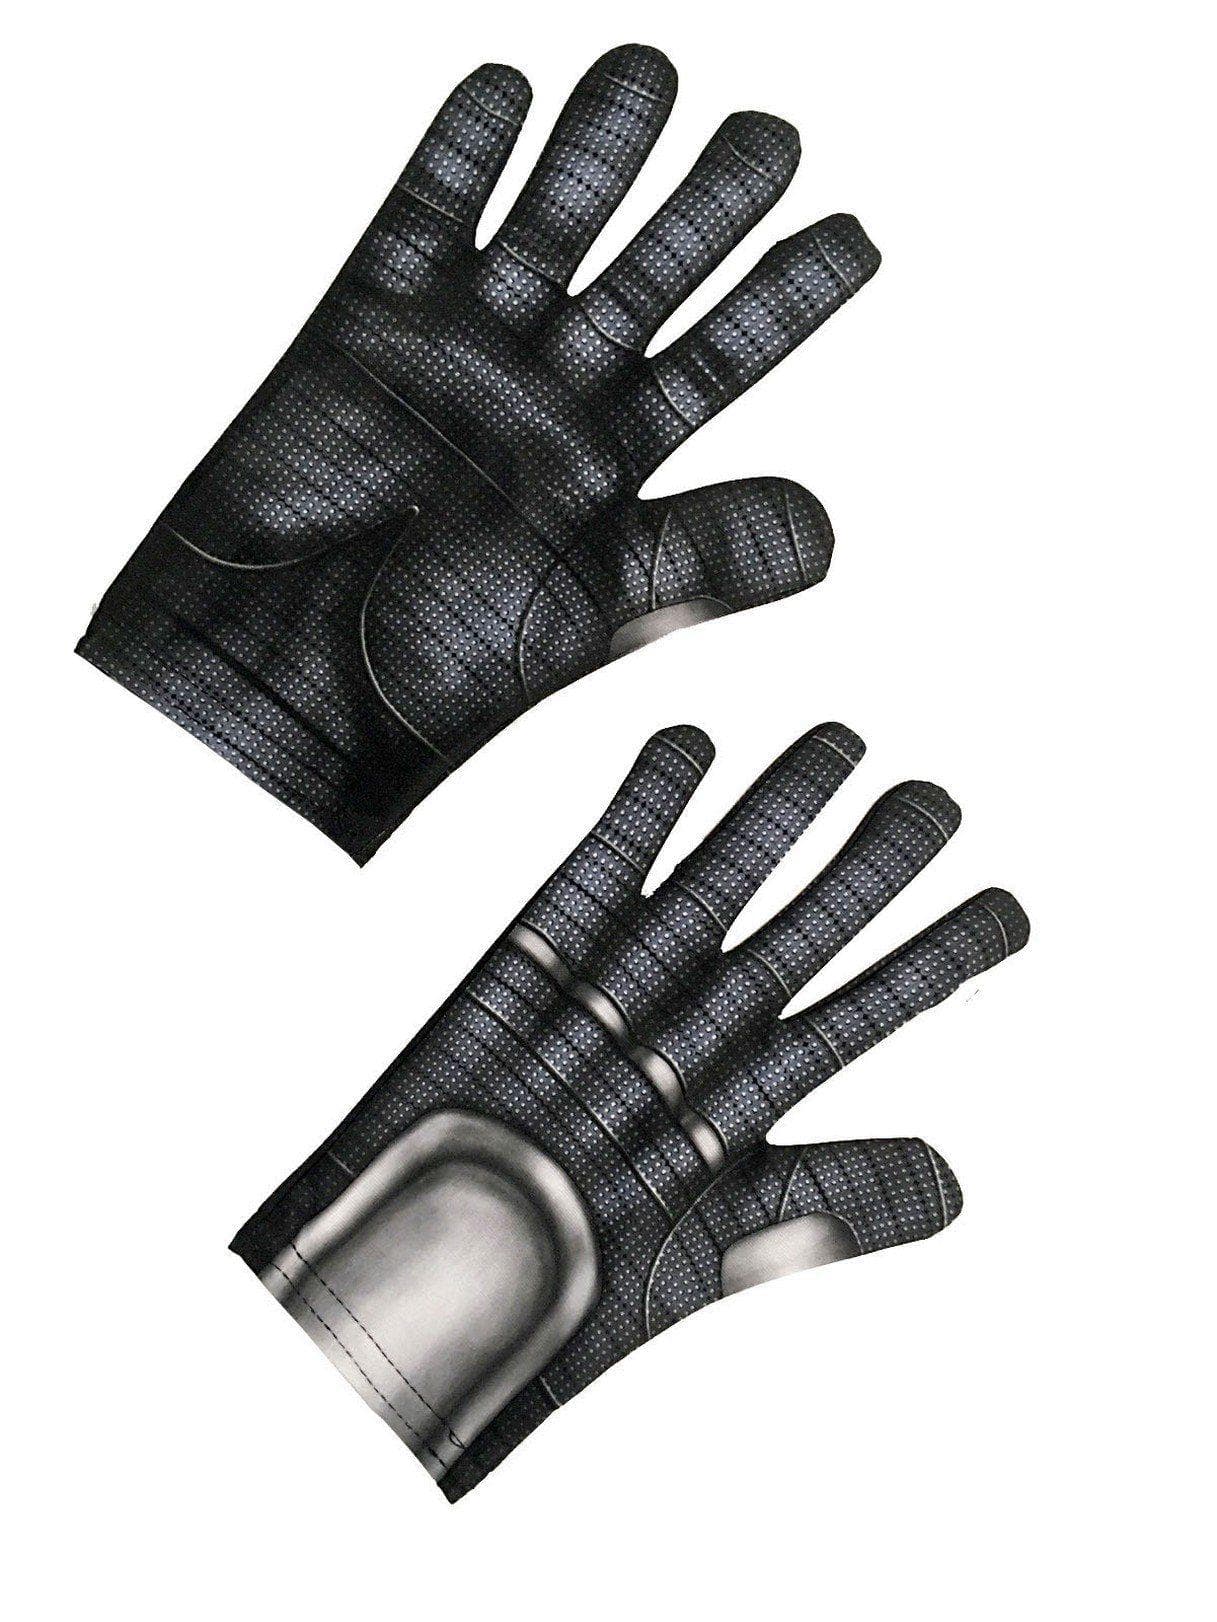 Adult Avengers: Endgame Ant-Man Gloves - costumes.com